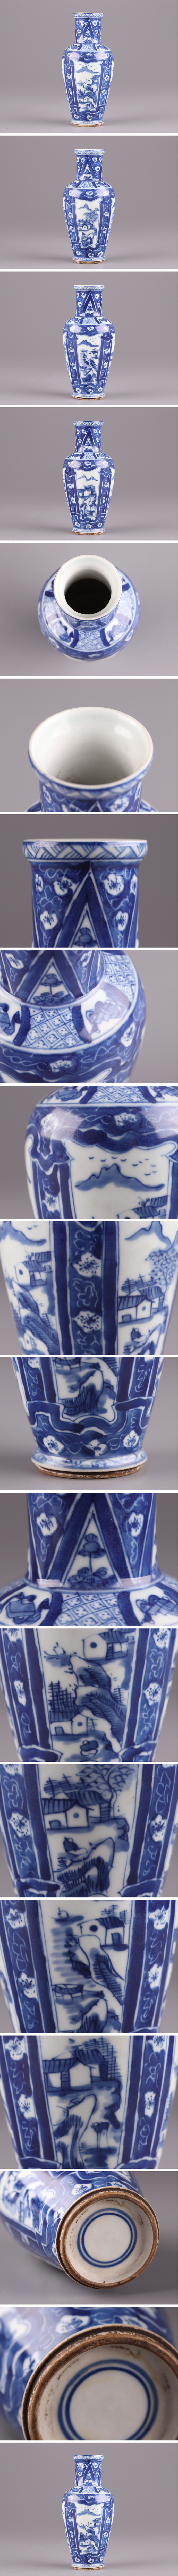 【新品セール】中国古玩 唐物 清代 青華 染付 花瓶 細密細工 時代物 極上品 初だし品 2812 染付